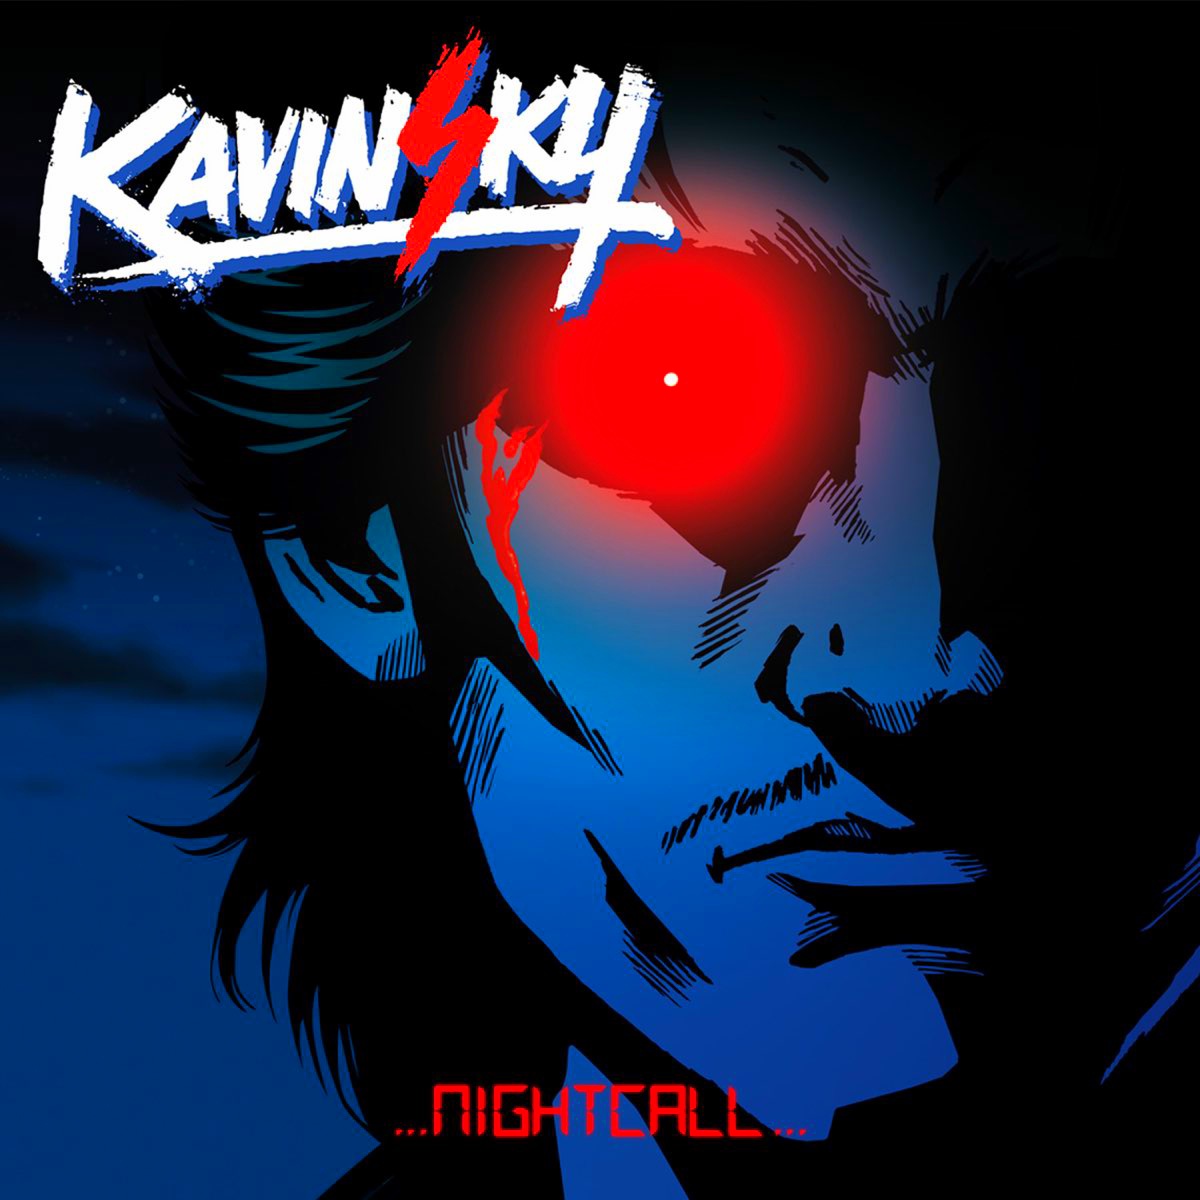 Kavinsky - Nightcall by TalentlessHacked on DeviantArt